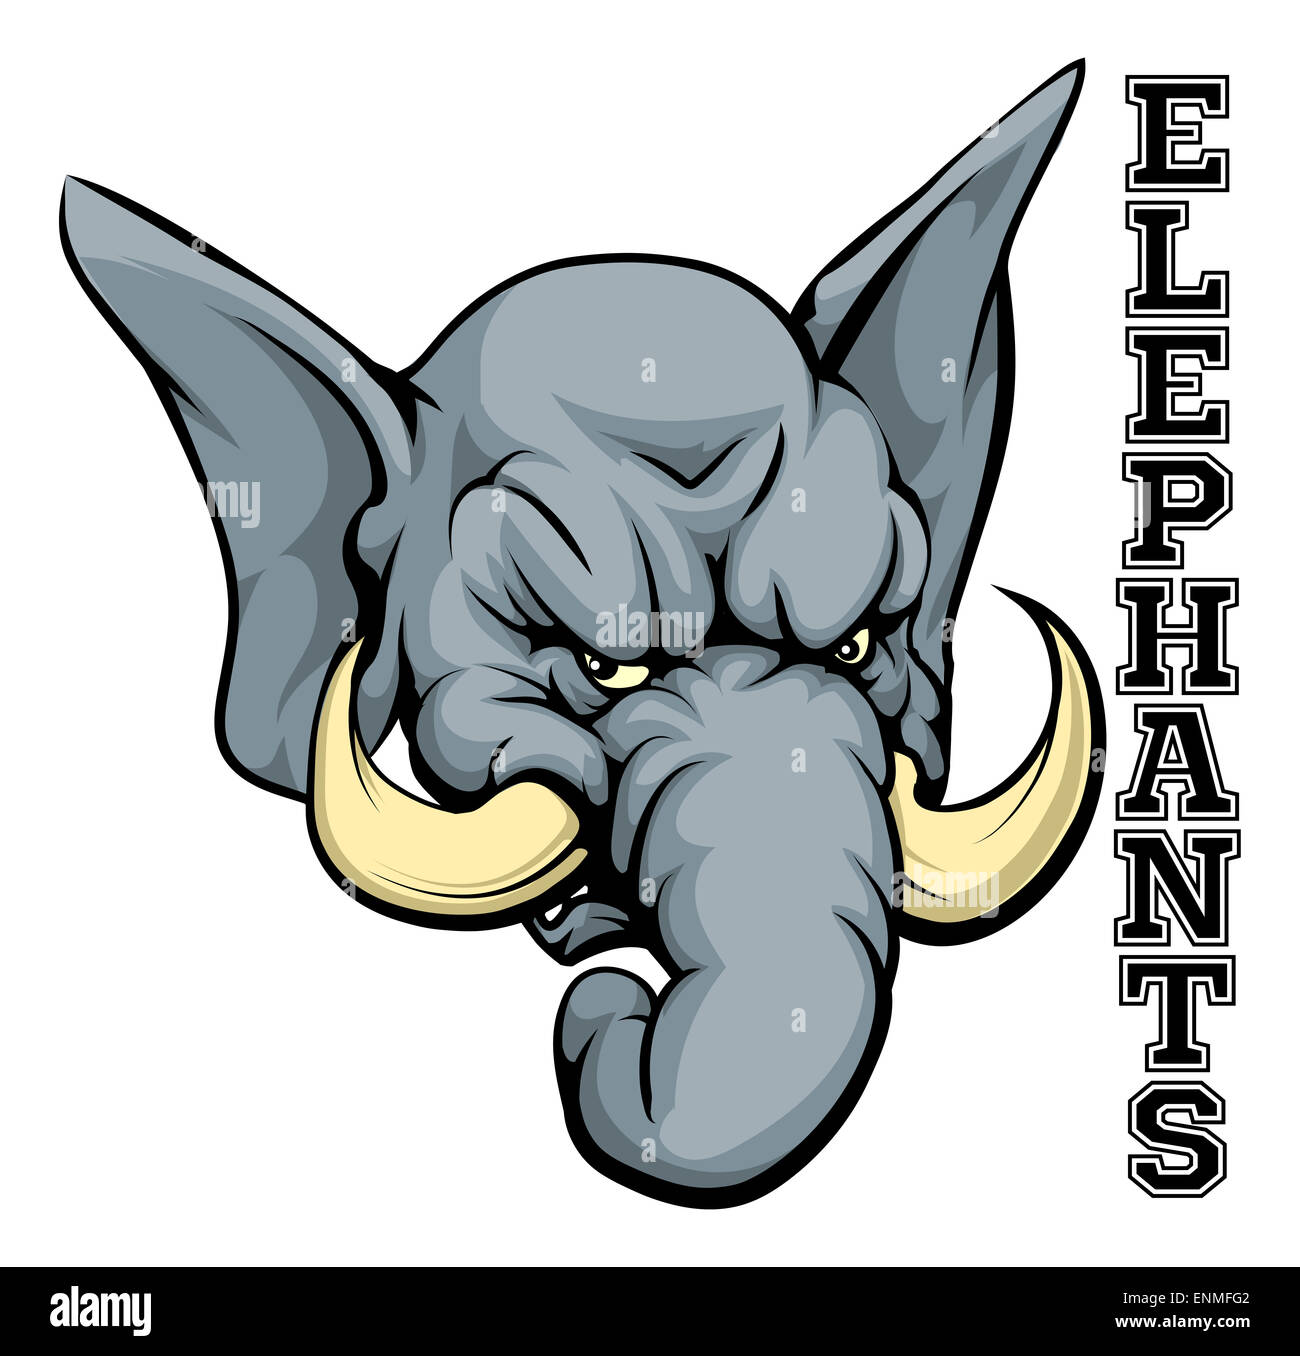 Une illustration d'un dessin de mascotte de l'équipe de sport de l'éléphant avec le texte les éléphants Banque D'Images